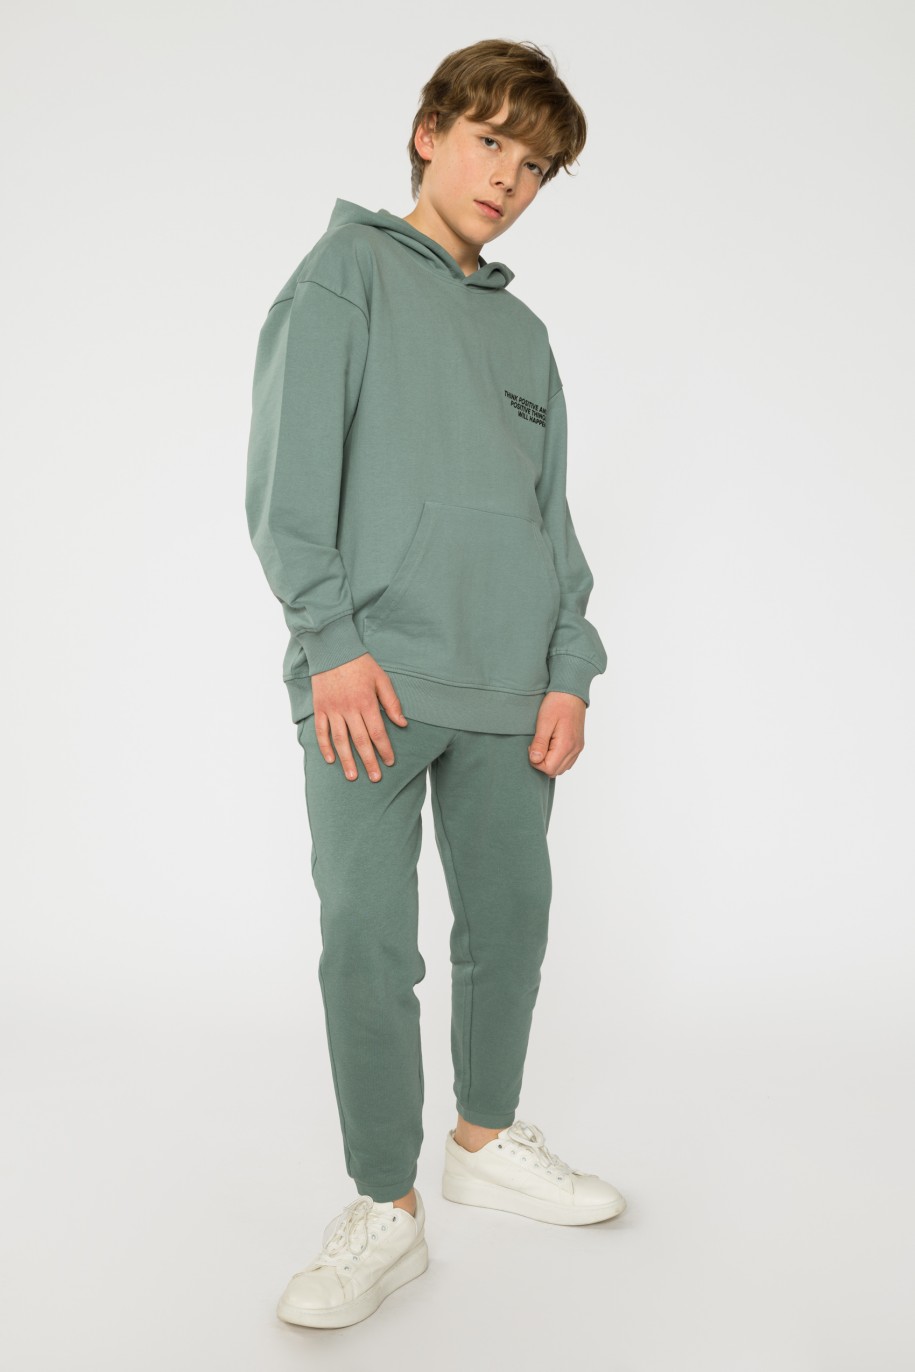 Zielone spodnie dresowe dla chłopaka SKATE OF MIND - 33139